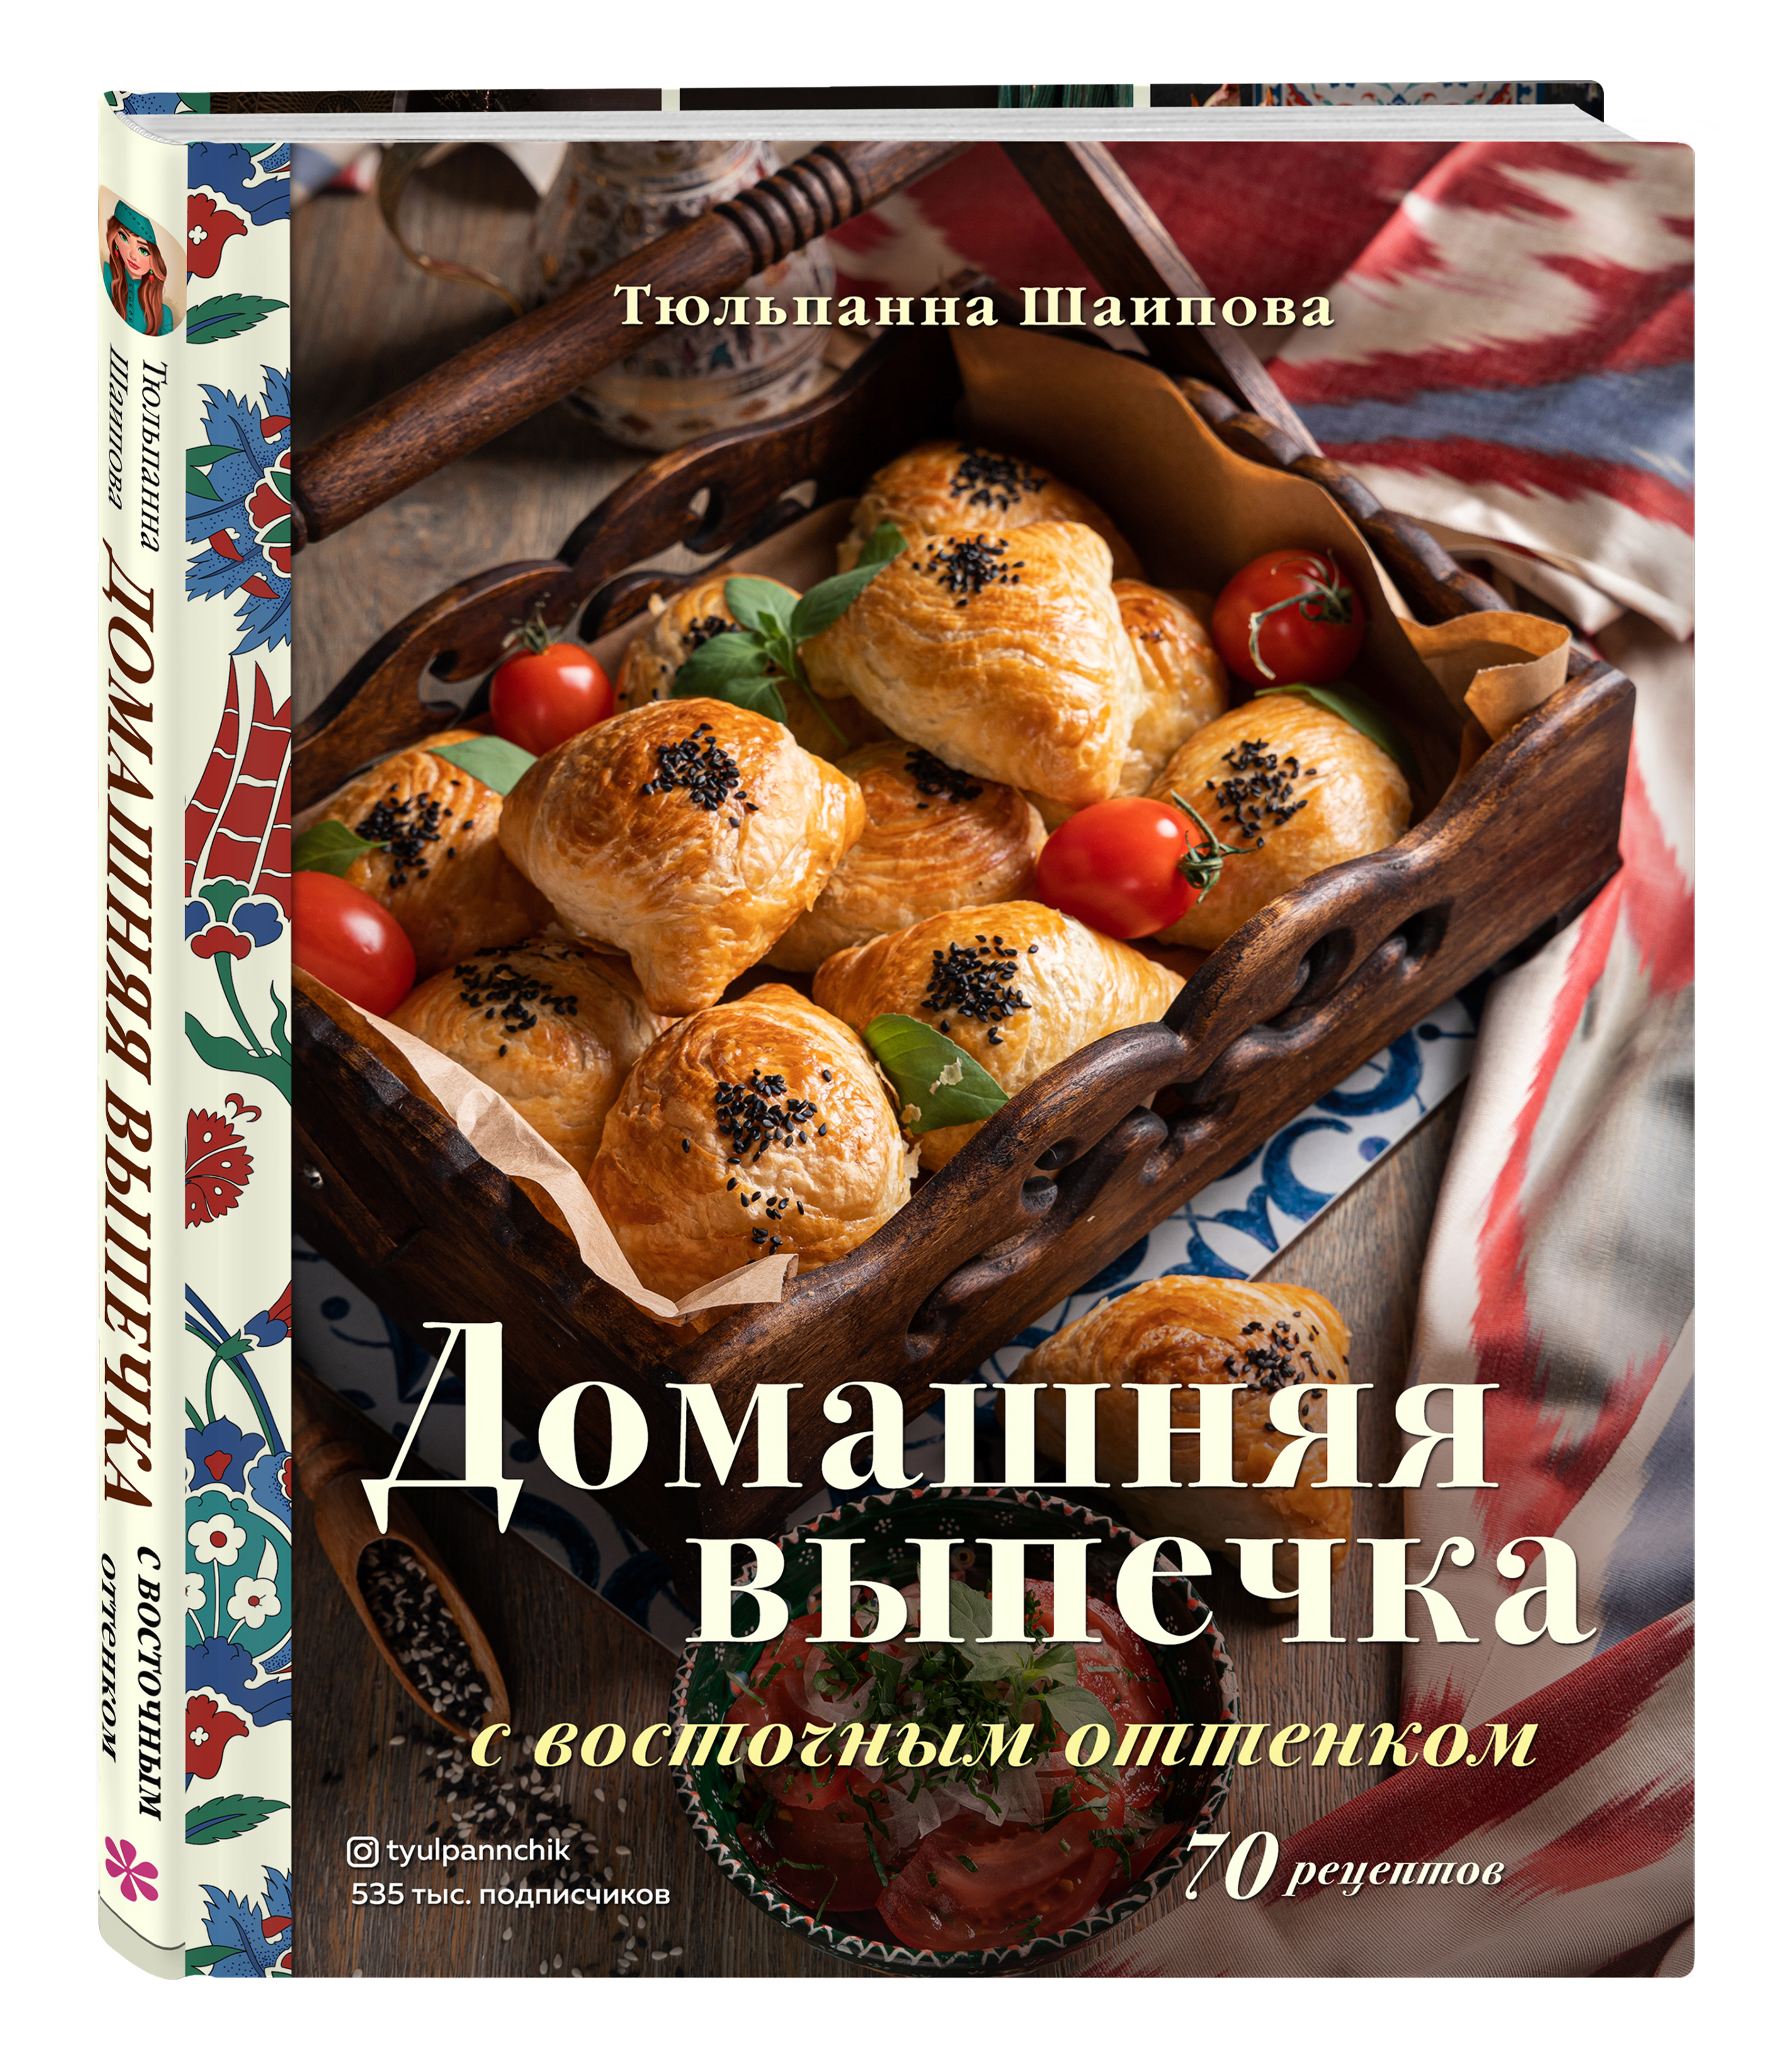 Крымско-татарская кухня, блюда, рецепты, история | Kitchen